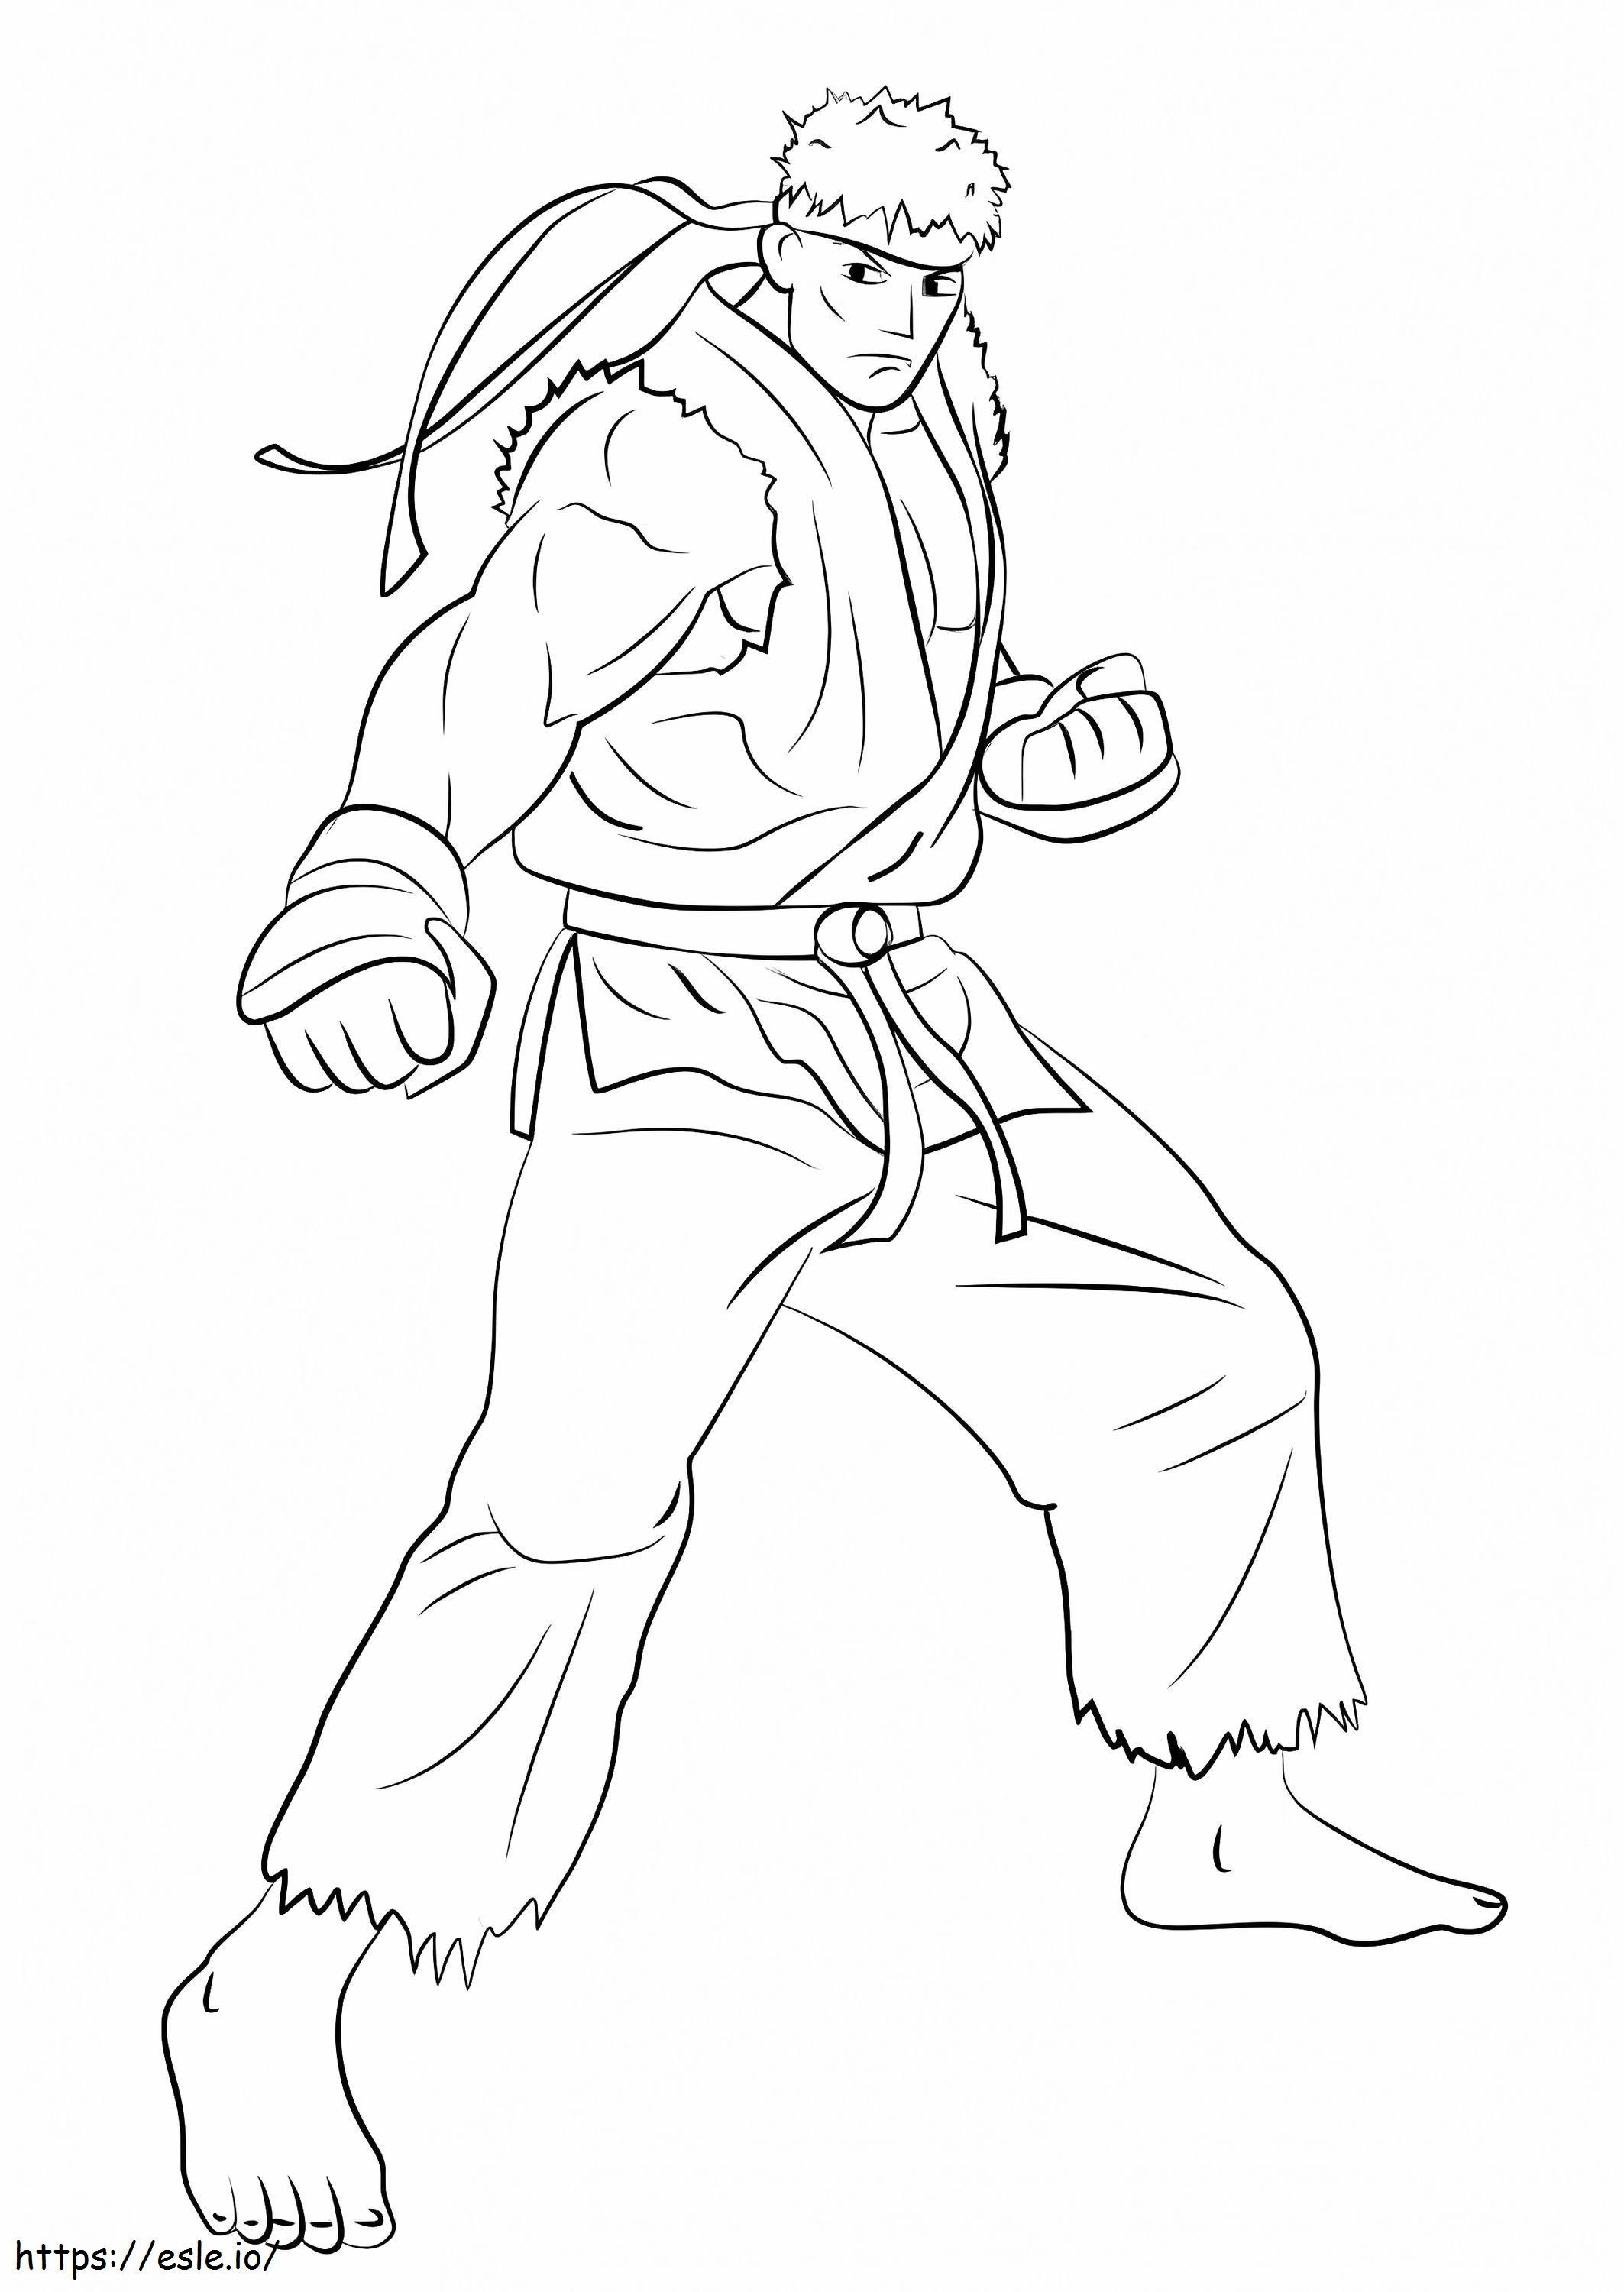 Ryu Dövüşü boyama